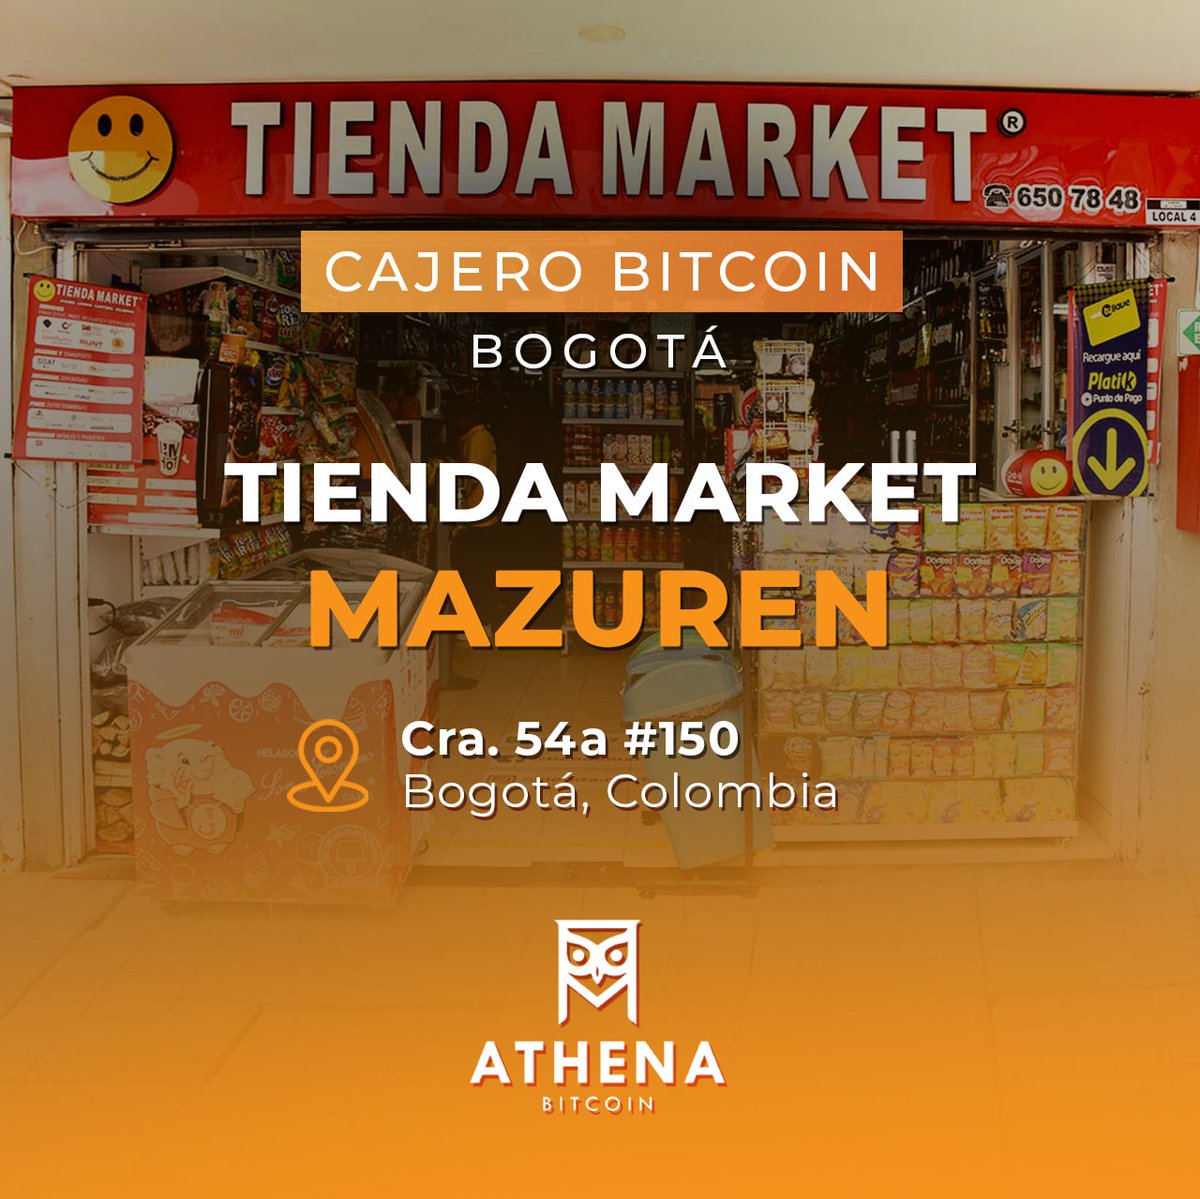 🏧 ¡Compra y vende Bitcoin en nuestro cajero ubicado en Tienda Market Mazuren!

👉 Visita nuestro mapa de cajeros #Bitcoin en #Colombia: athenabitcoin.com/cajeros-bitcoi…

#fintech #futuro #colombia🇨🇴 #bitcoincolombia #fintech #latam #atm #emprendimiento #economiadigital